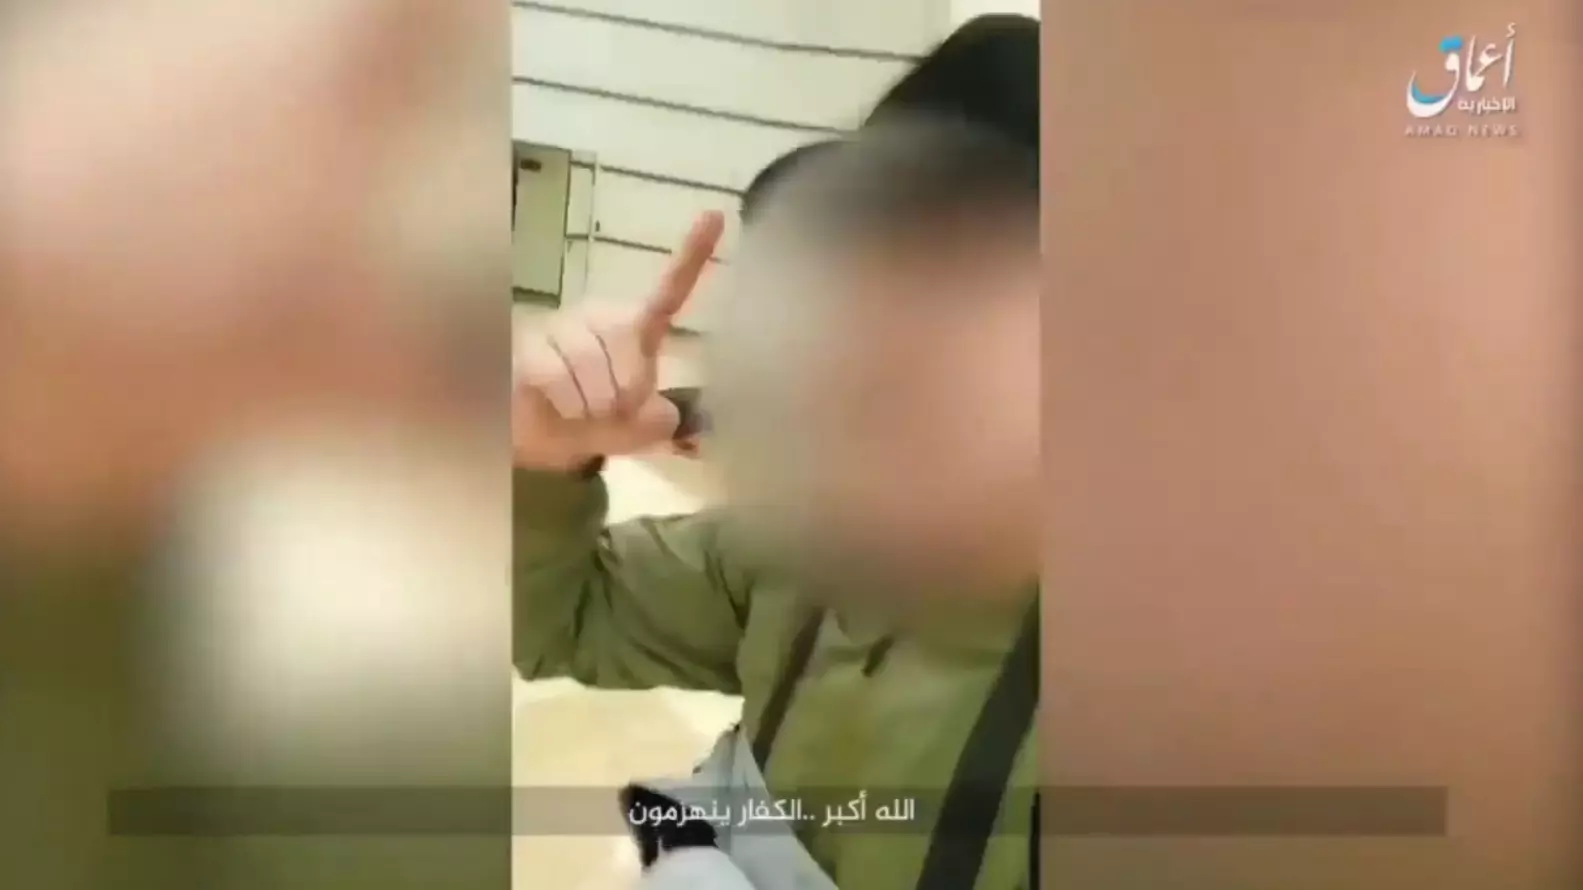 Террористы ИГИЛ* выложили видеоотчет с казнью посетителя в «Крокус Сити Холле»